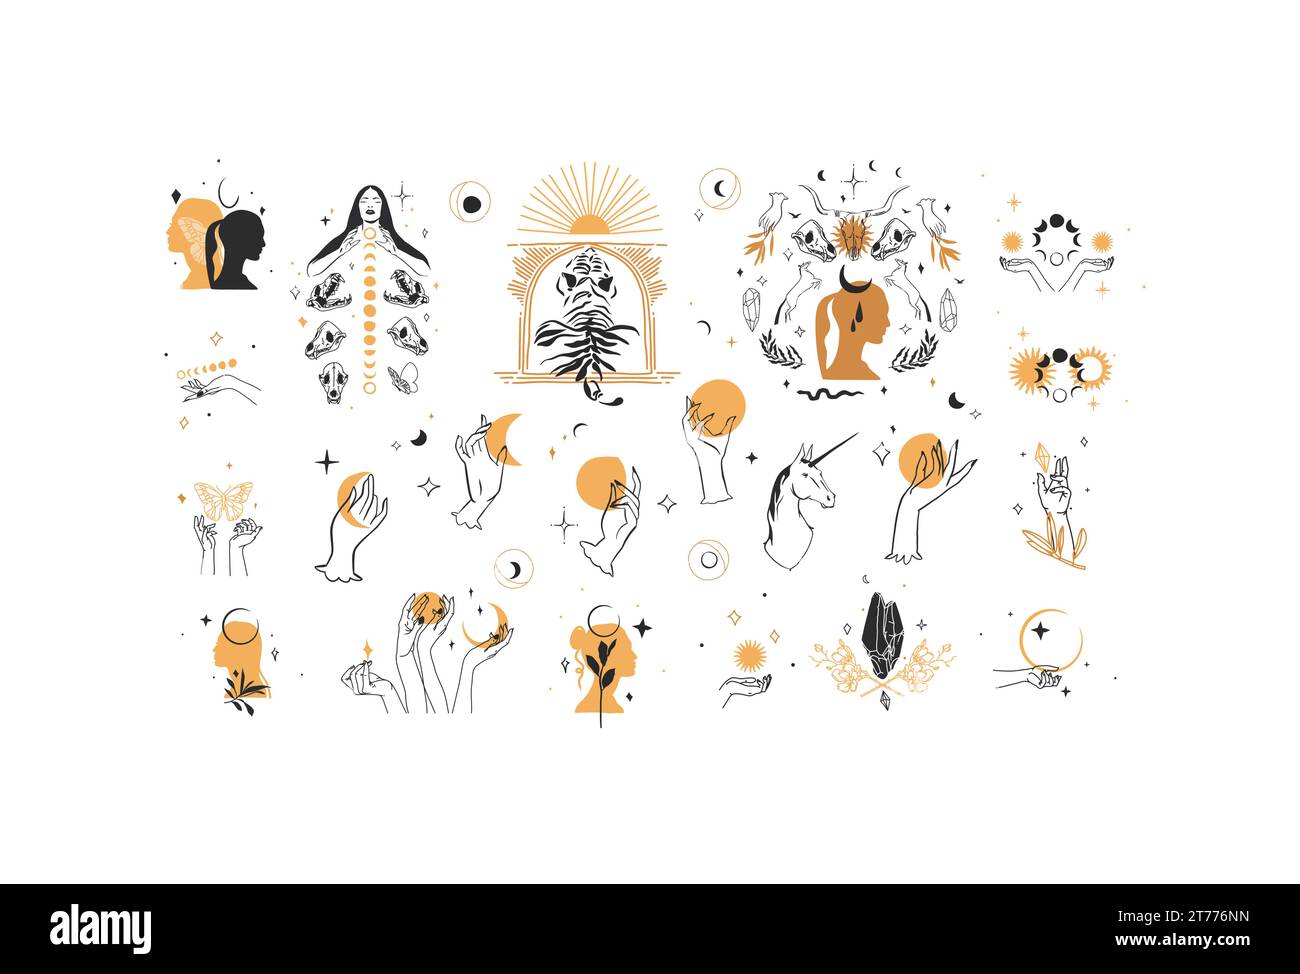 Ensemble de collection d'éléments d'illustration de ligne graphique abstraite de vecteur dessiné à la main, croissant magique, animaux, fleurs, cadres, lune et mains humaines isolées Illustration de Vecteur